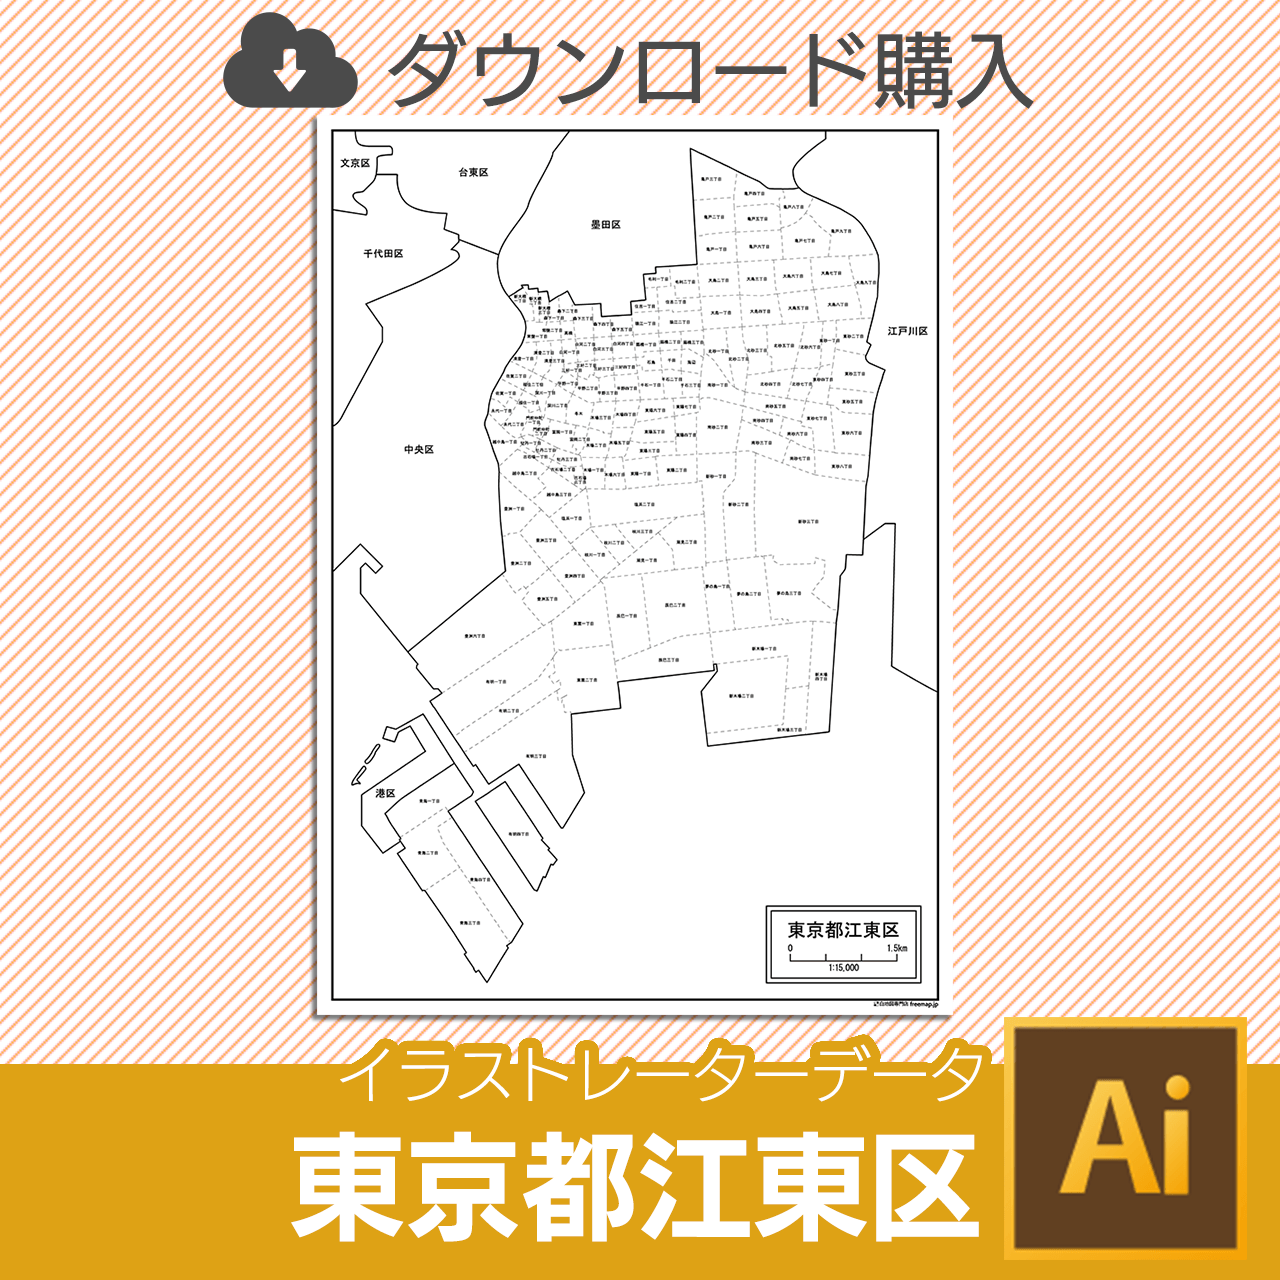 東京都江東区のaiデータのサムネイル画像